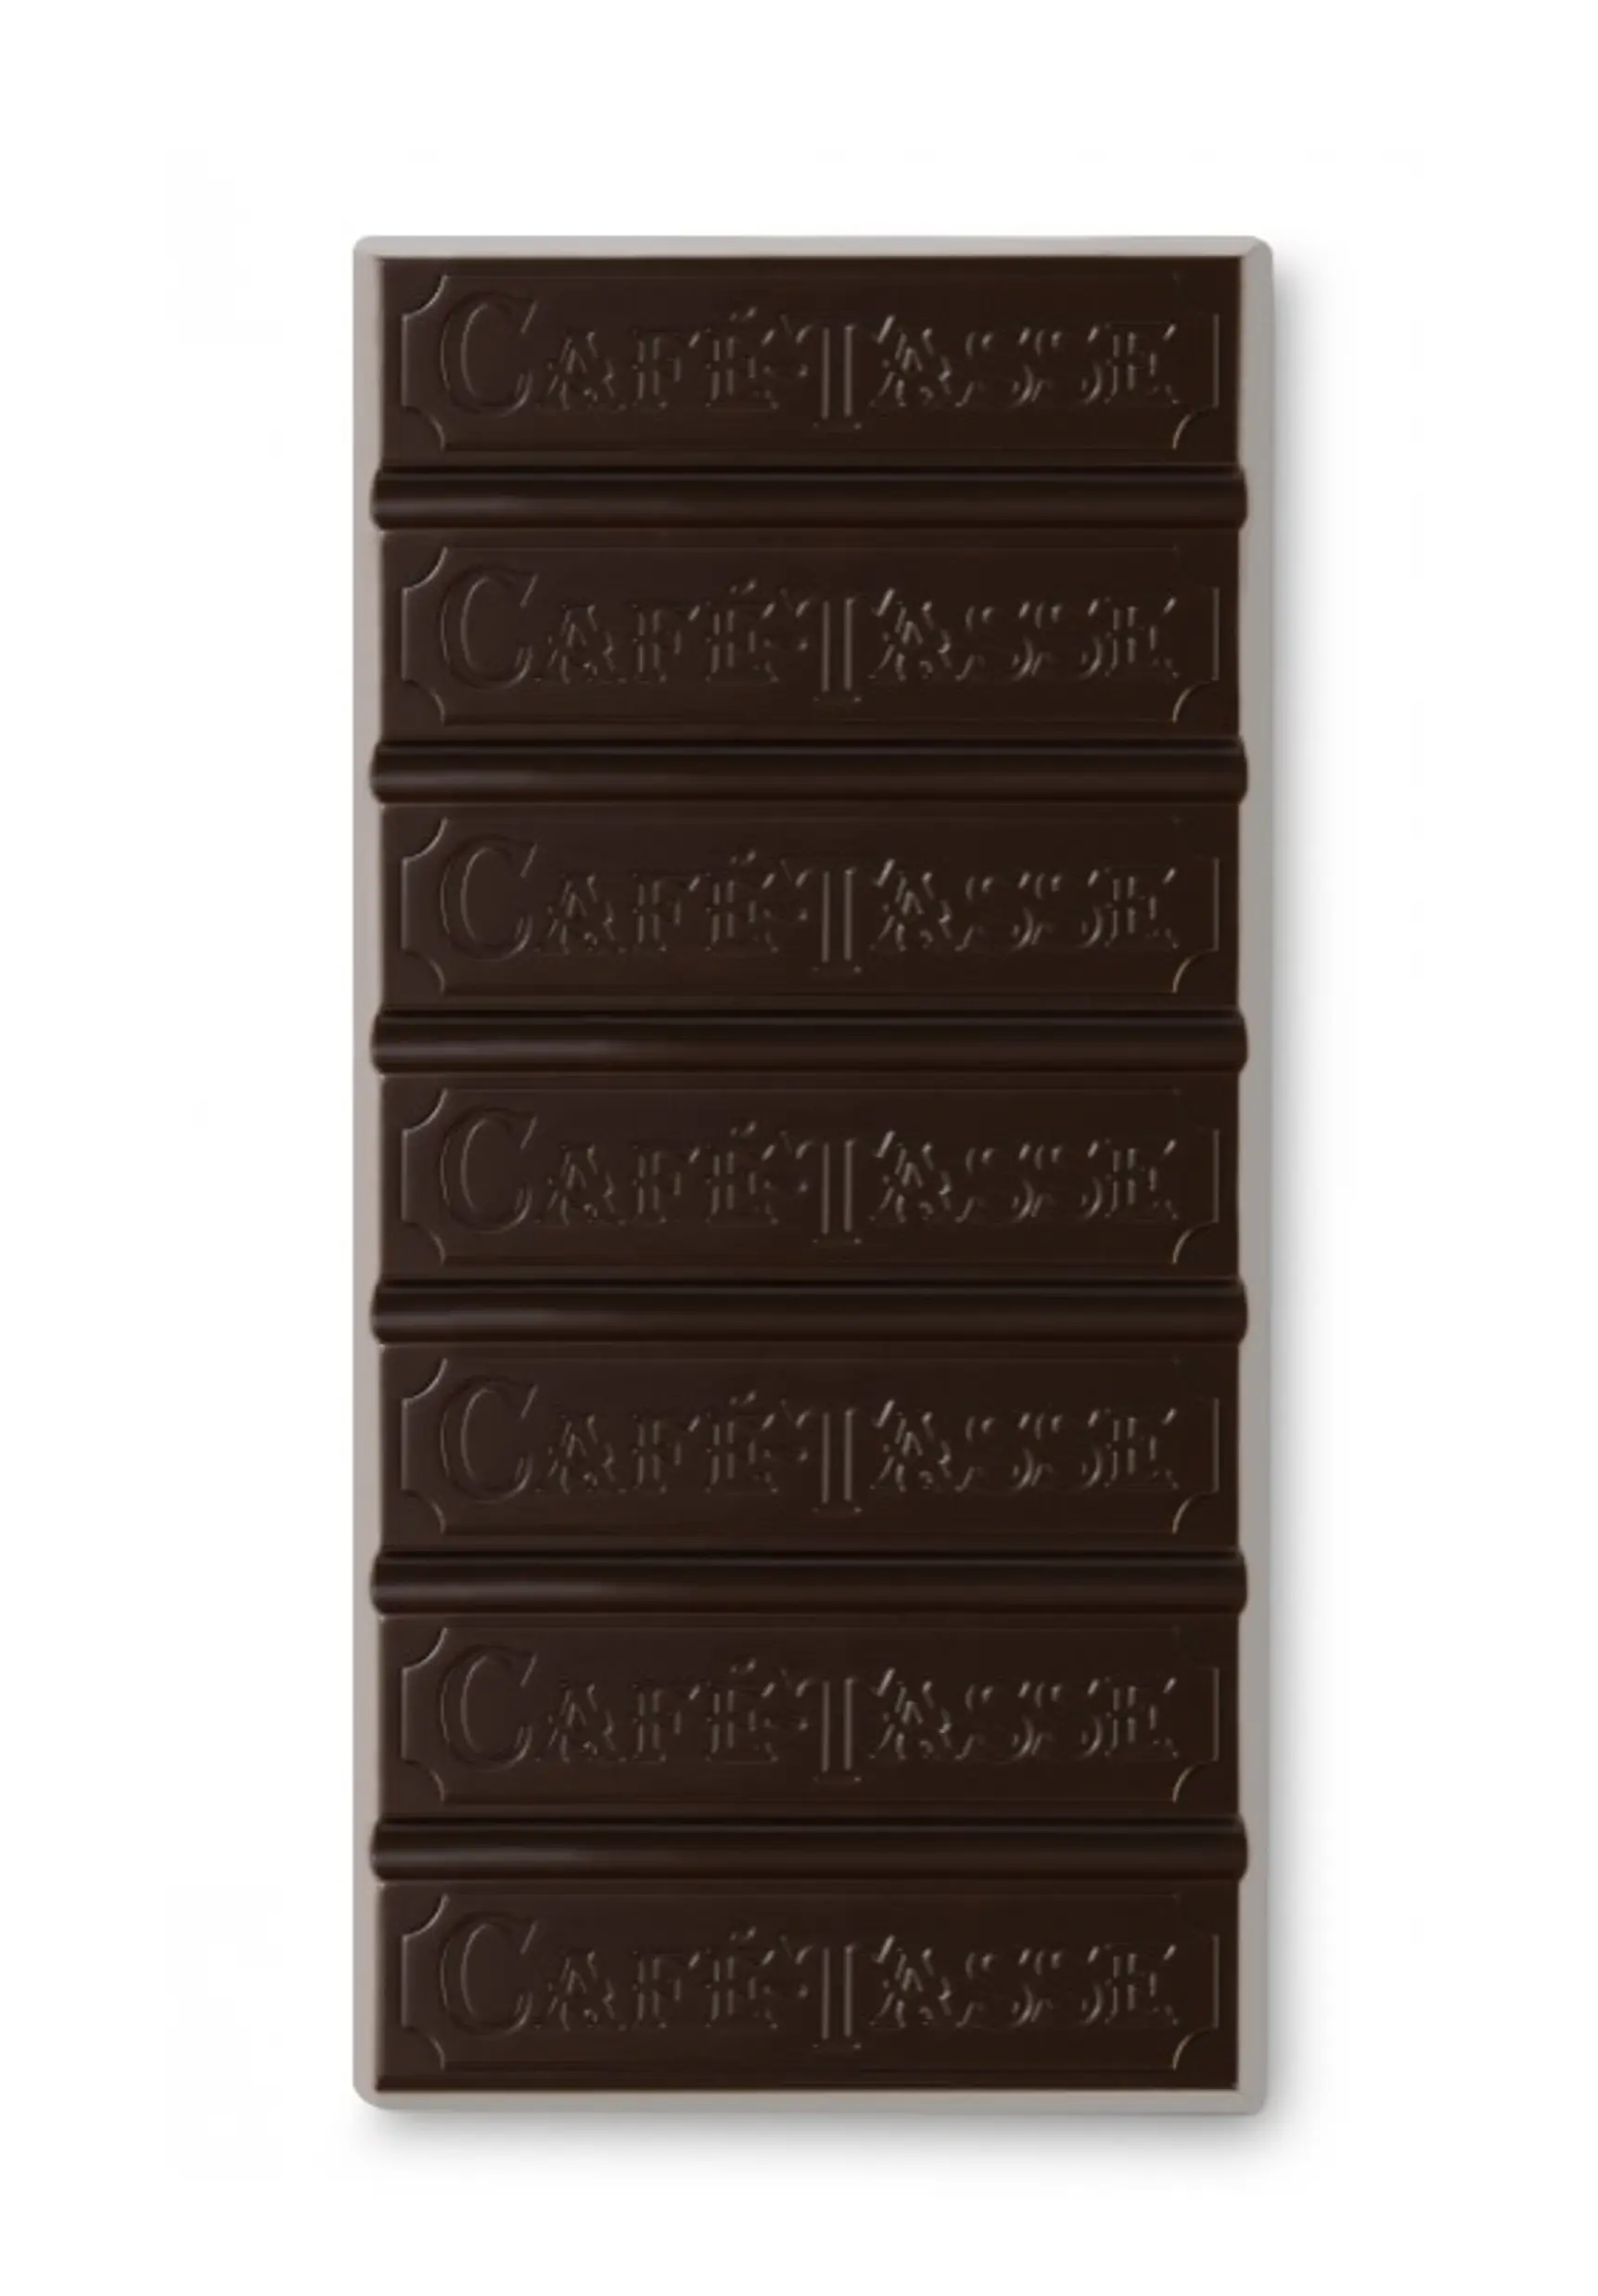 Tablette de chocolat extra noir 77% - ETIENNE Coffee & Shop